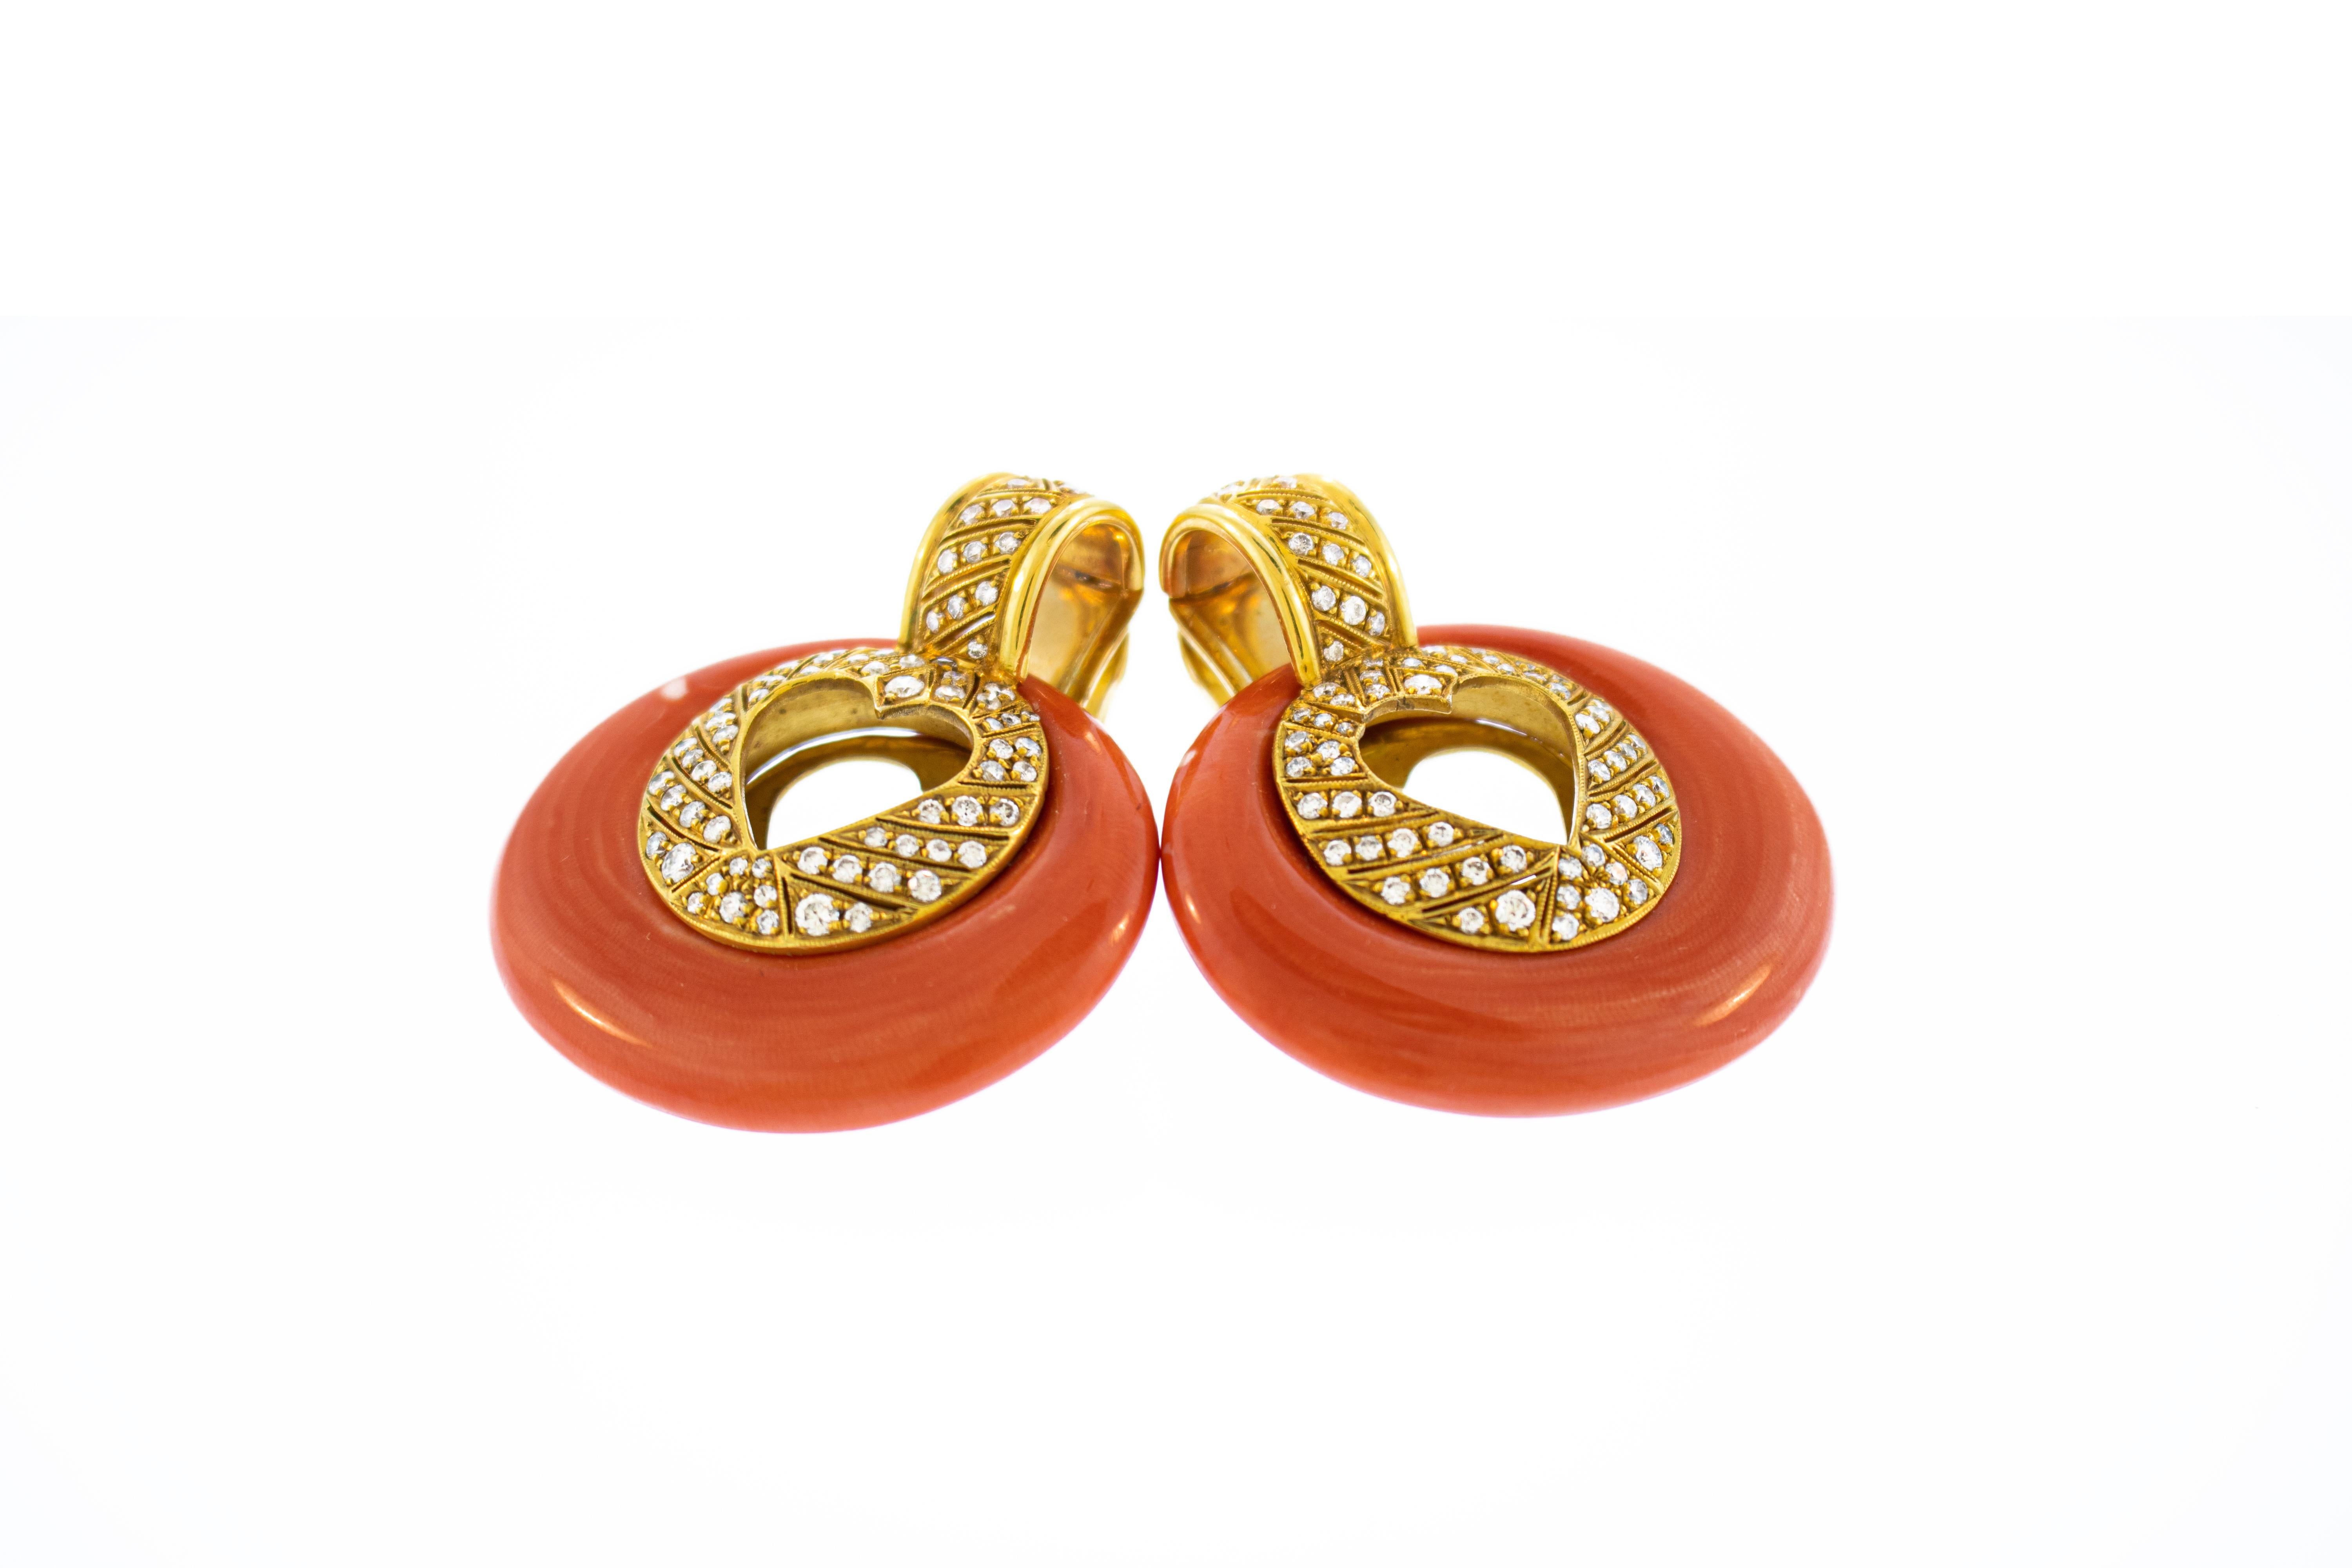 Schöne 18k Gold rote Koralle und Diamant Ohrringe. Gesamtgewicht von 54 Gramm. Gesamtkaratgewicht der Diamanten beträgt ca. 3 Karat